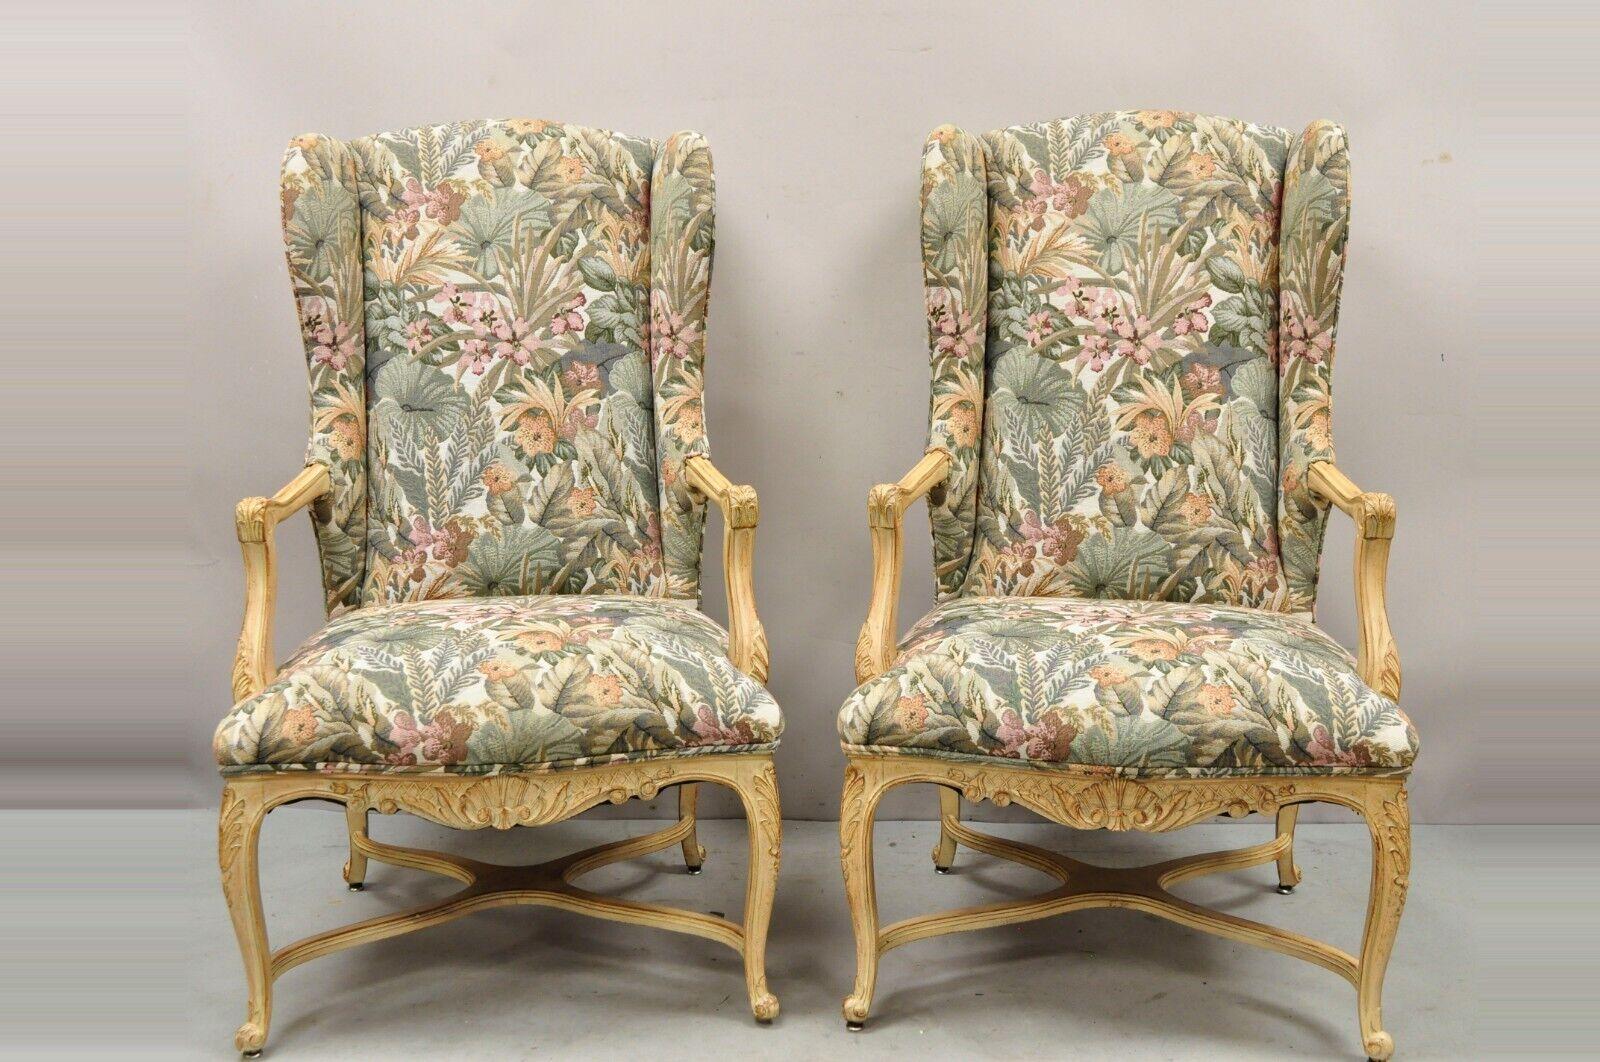 Paire de chaises de salon provinciales françaises de style Louis XV tapissées et à oreilles L'article présente une finition délavée en blanc, des dossiers ailés galbés, une base à traverses, une tapisserie à motifs floraux, des détails joliment